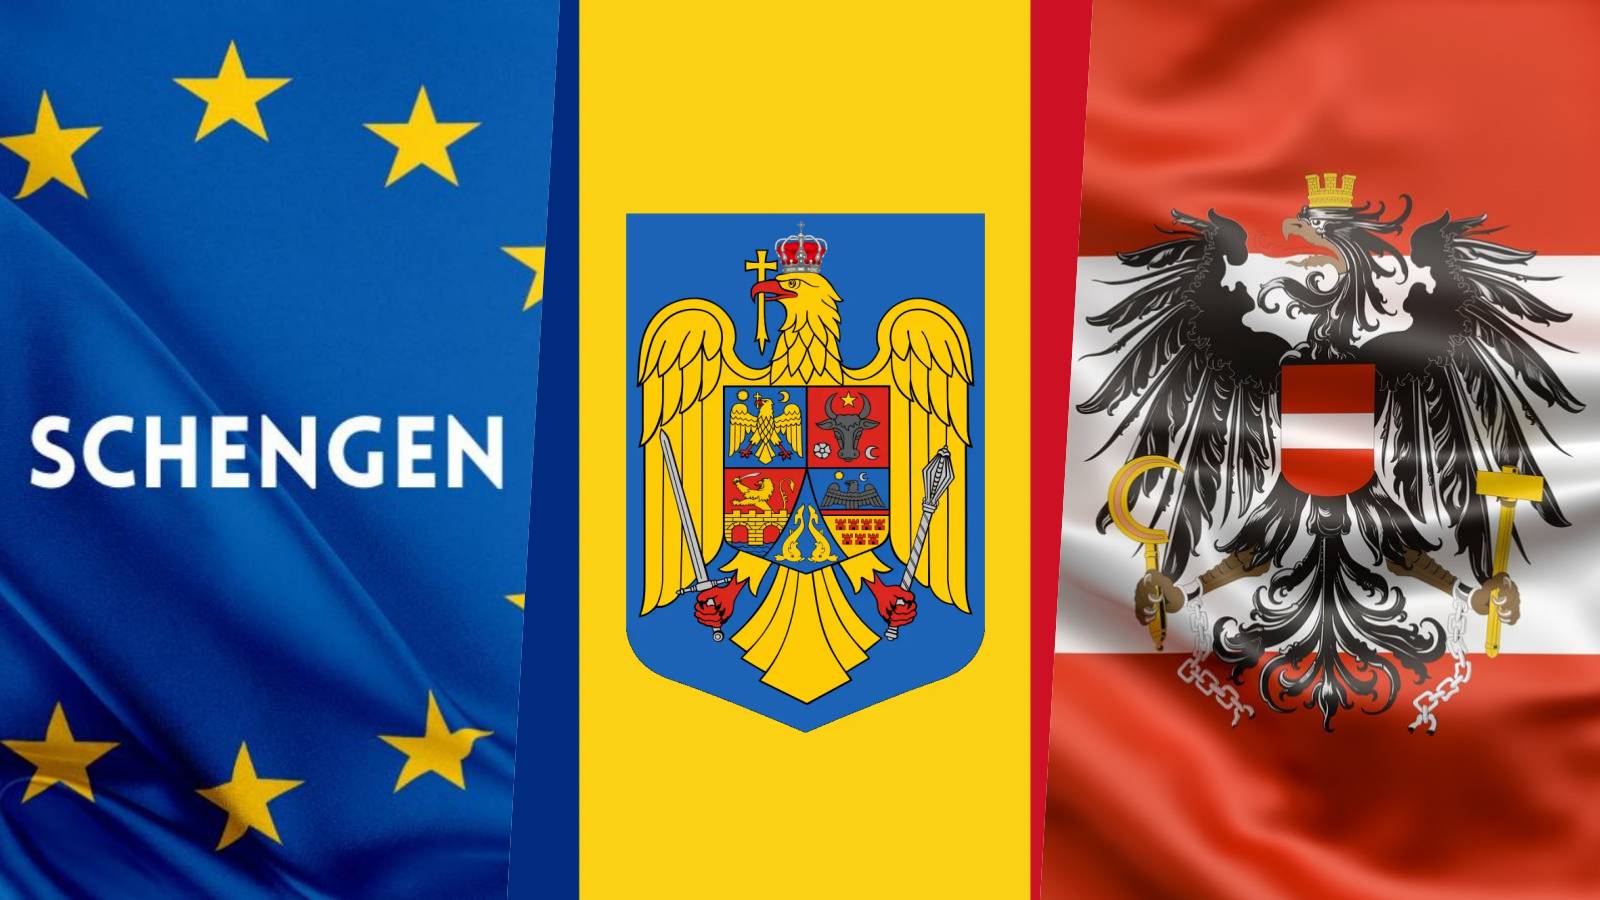 Austria Karl Nehammer Announces LAST MOMENT Official Decisions Against Romania's Schengen Accession